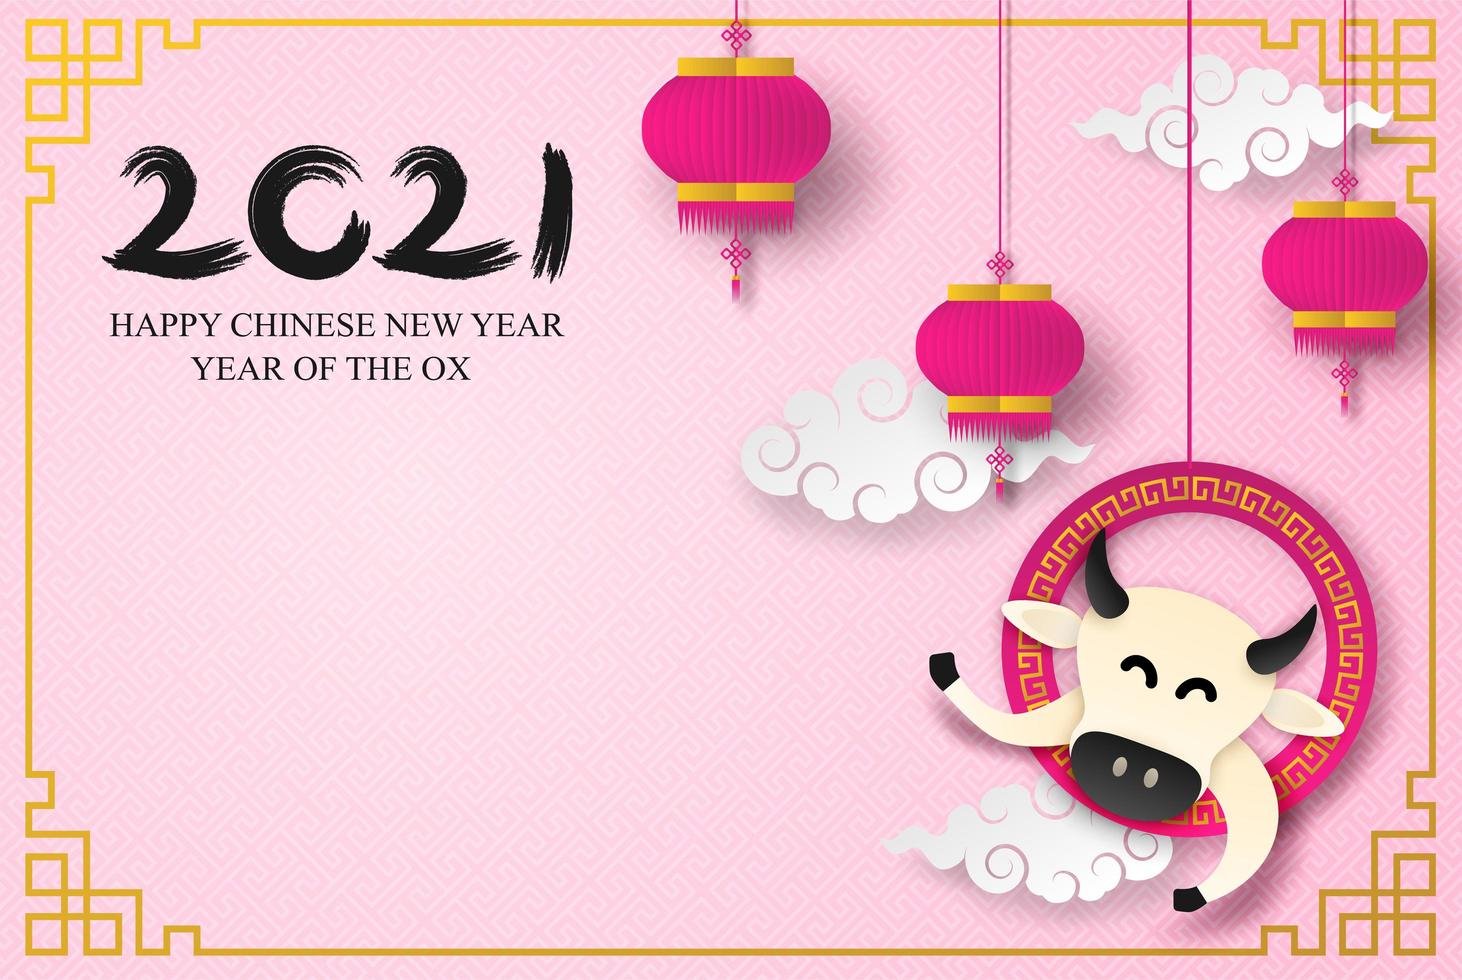 pappersskuren kinesisk nyårsdesign med rosa lyktor vektor